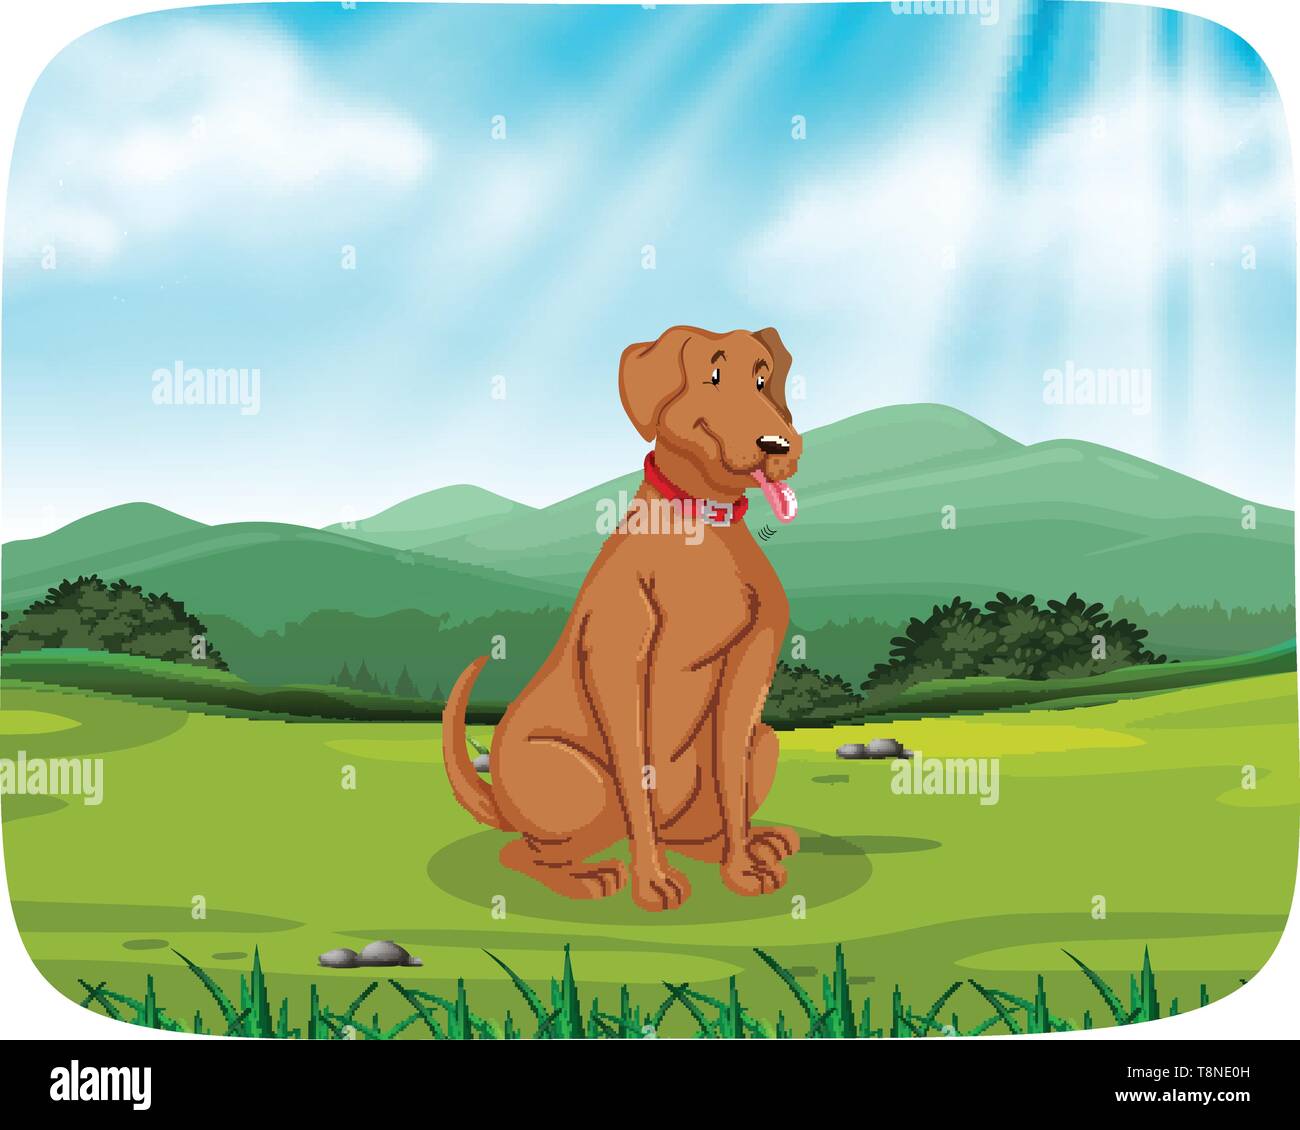 Dog in park scene illustration Stock Vector